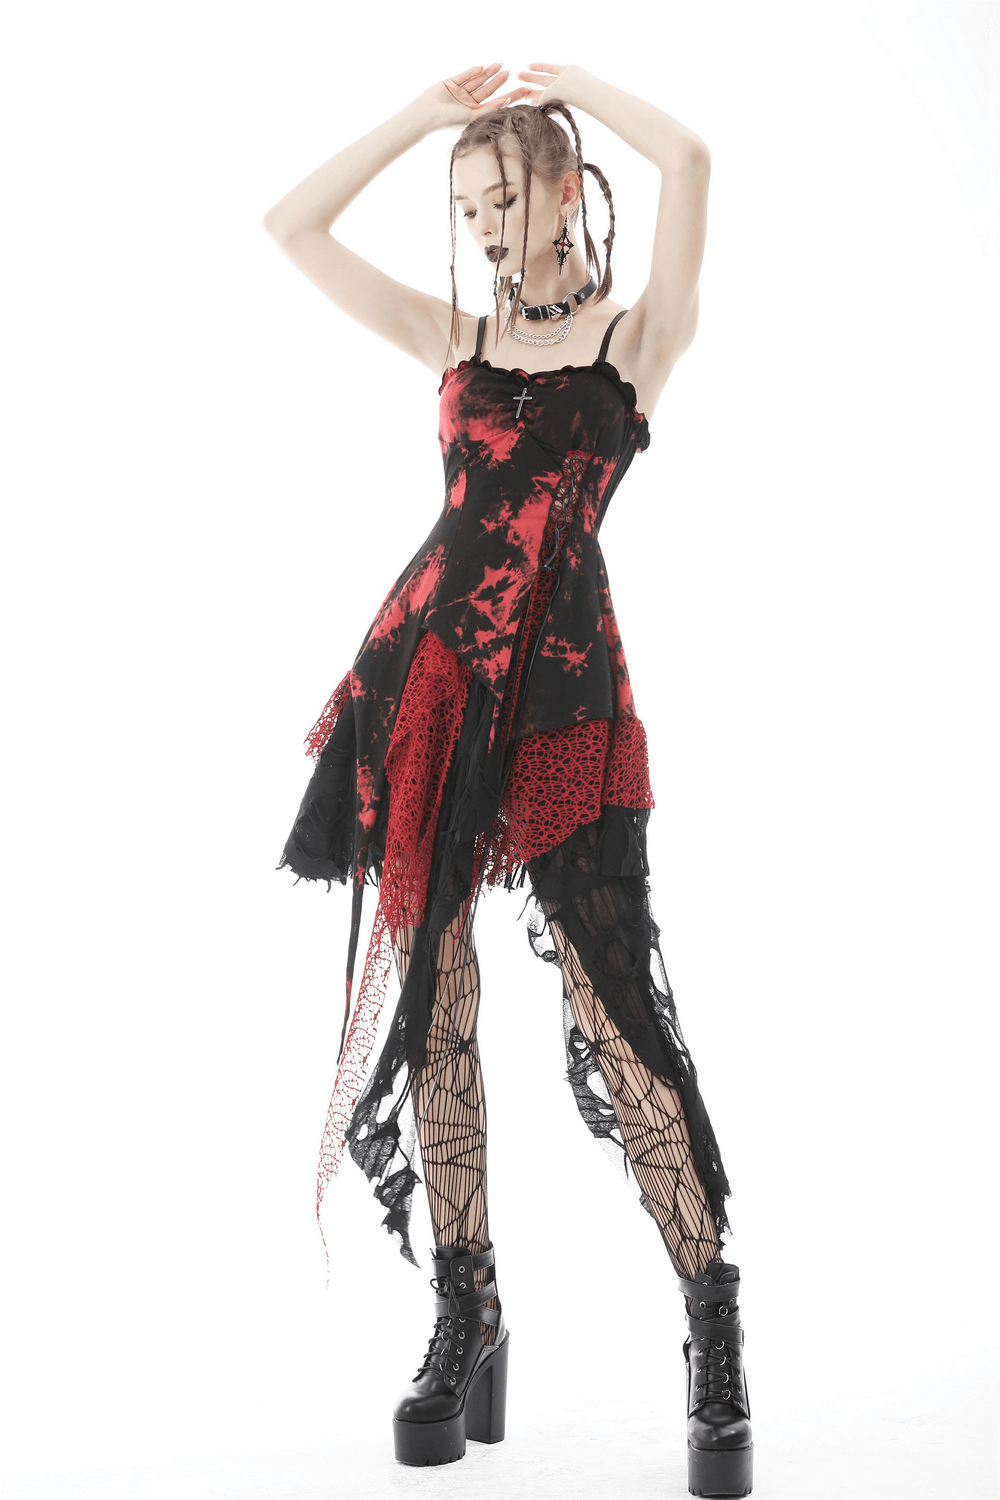 Stylish Punk Rock Dress with Irregular Net and Straps